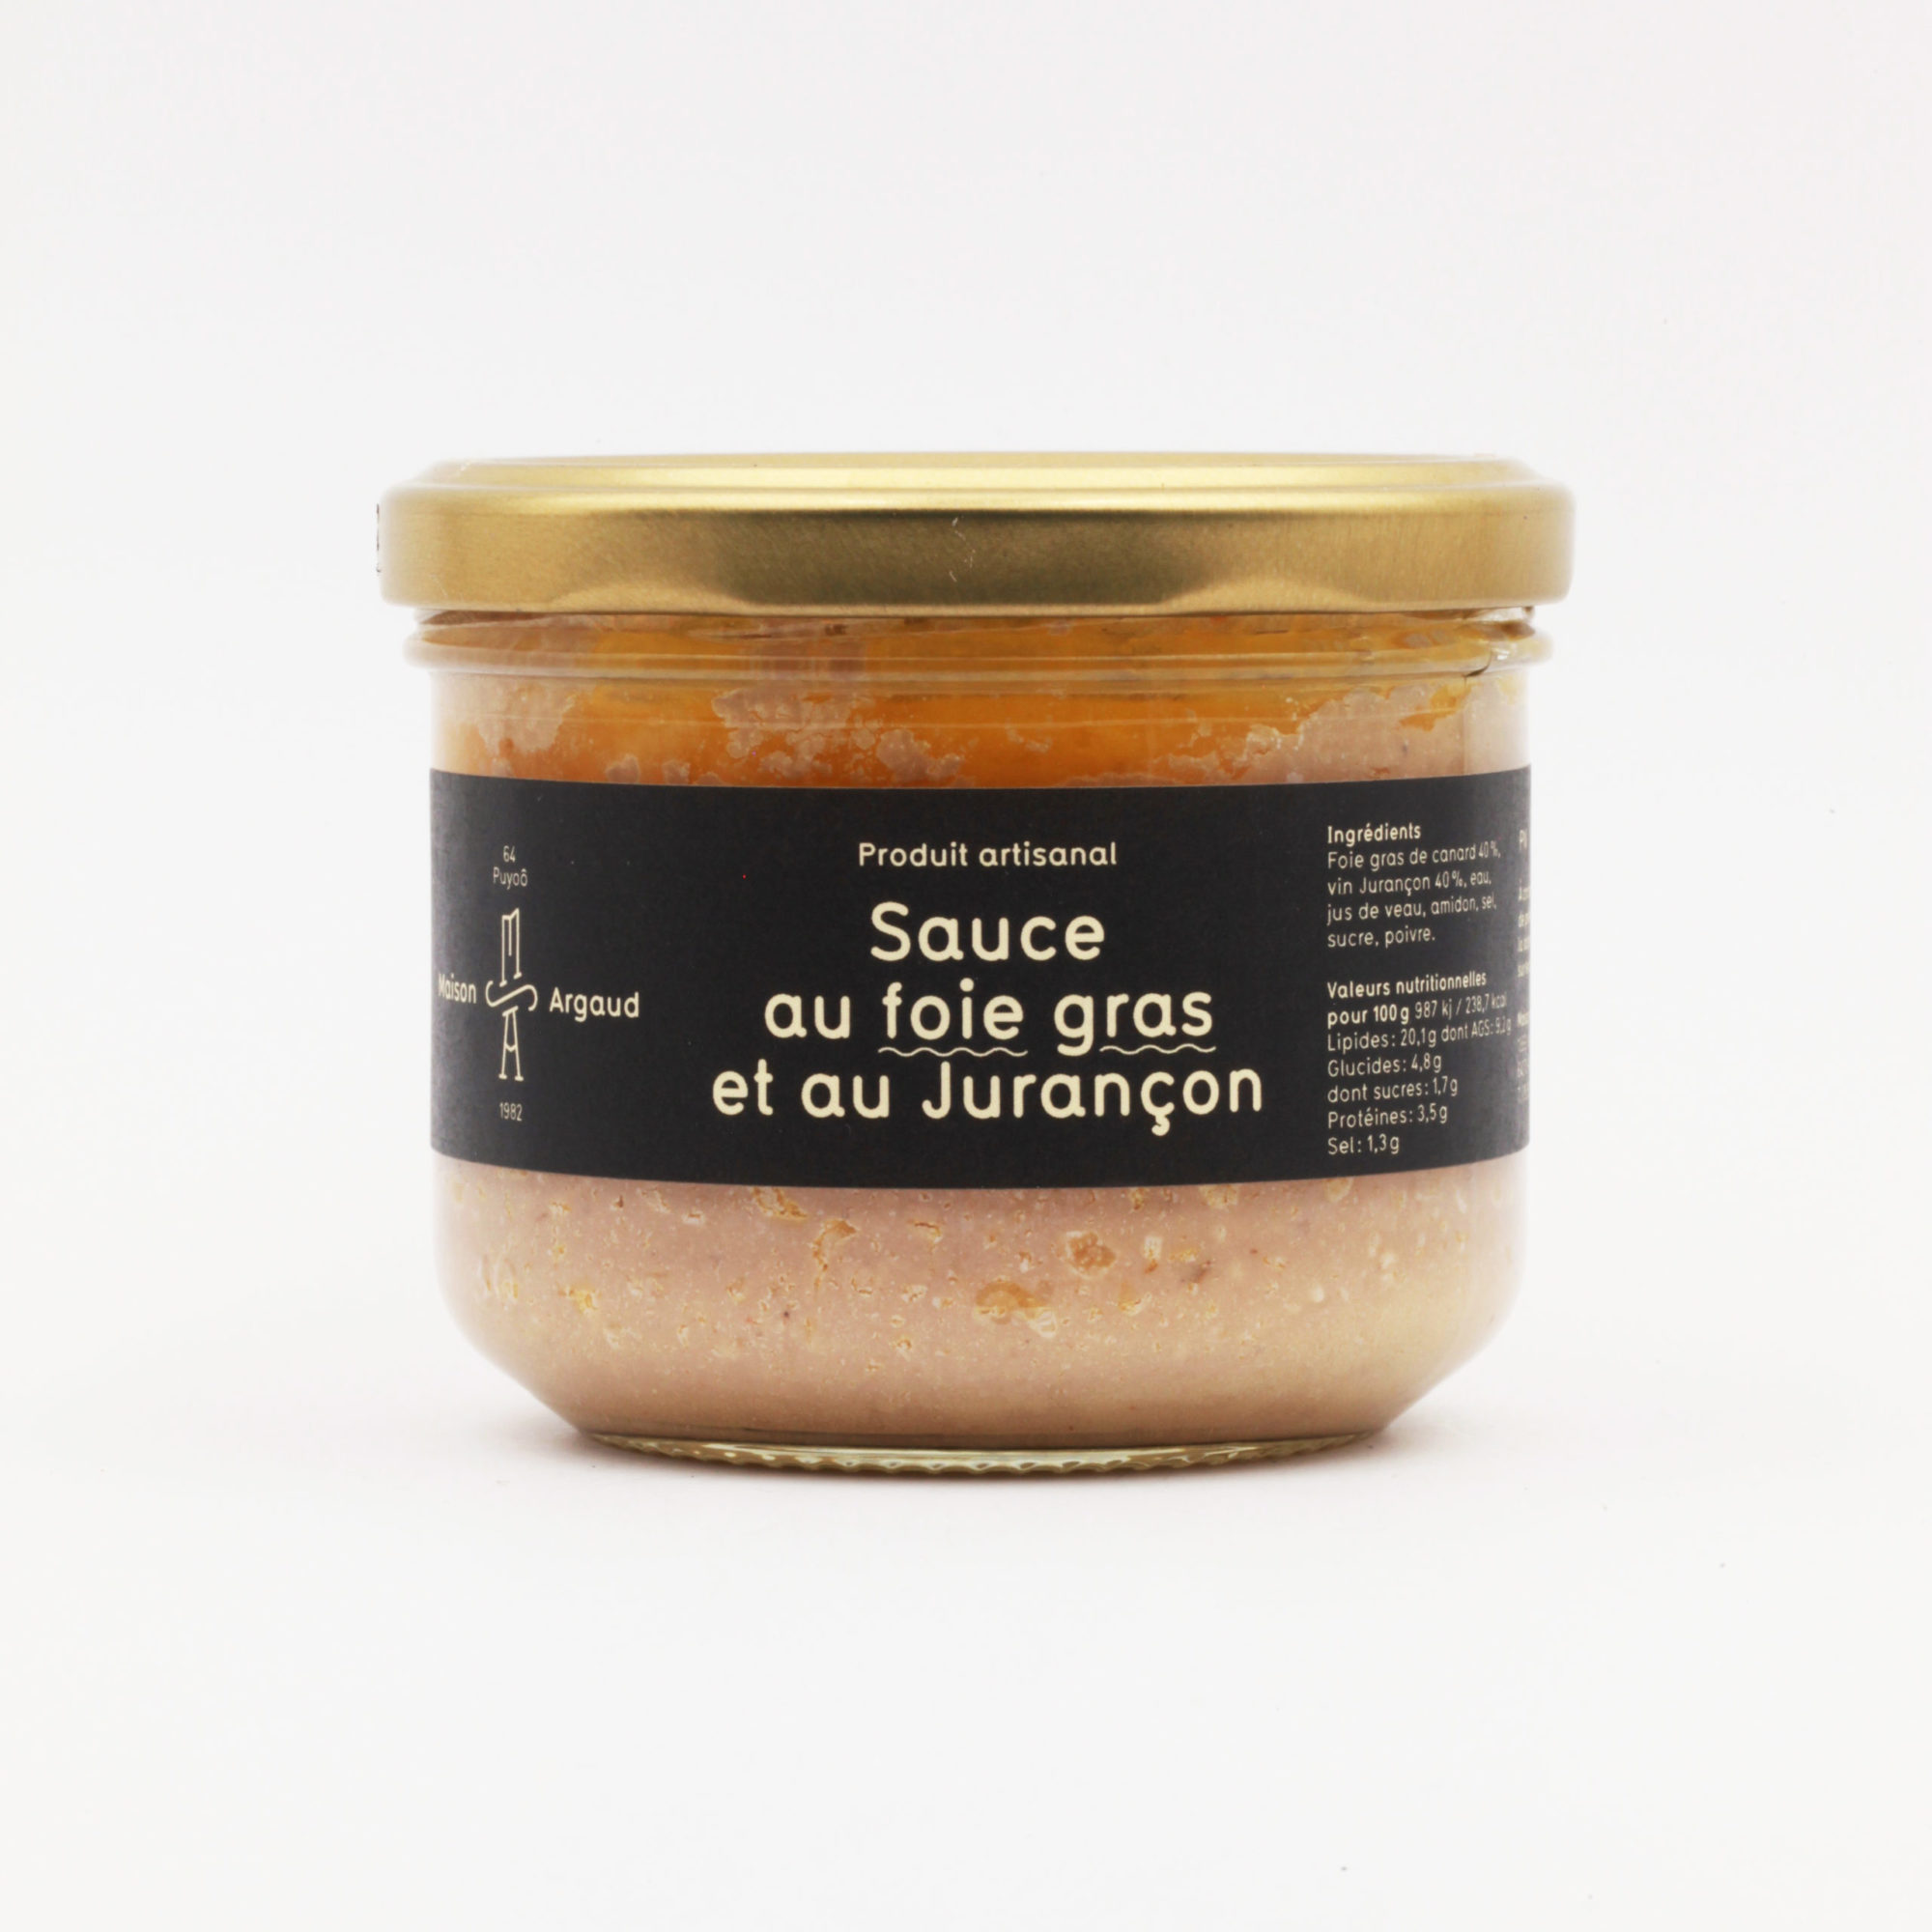 Sauce au foie gras et au Jurançon